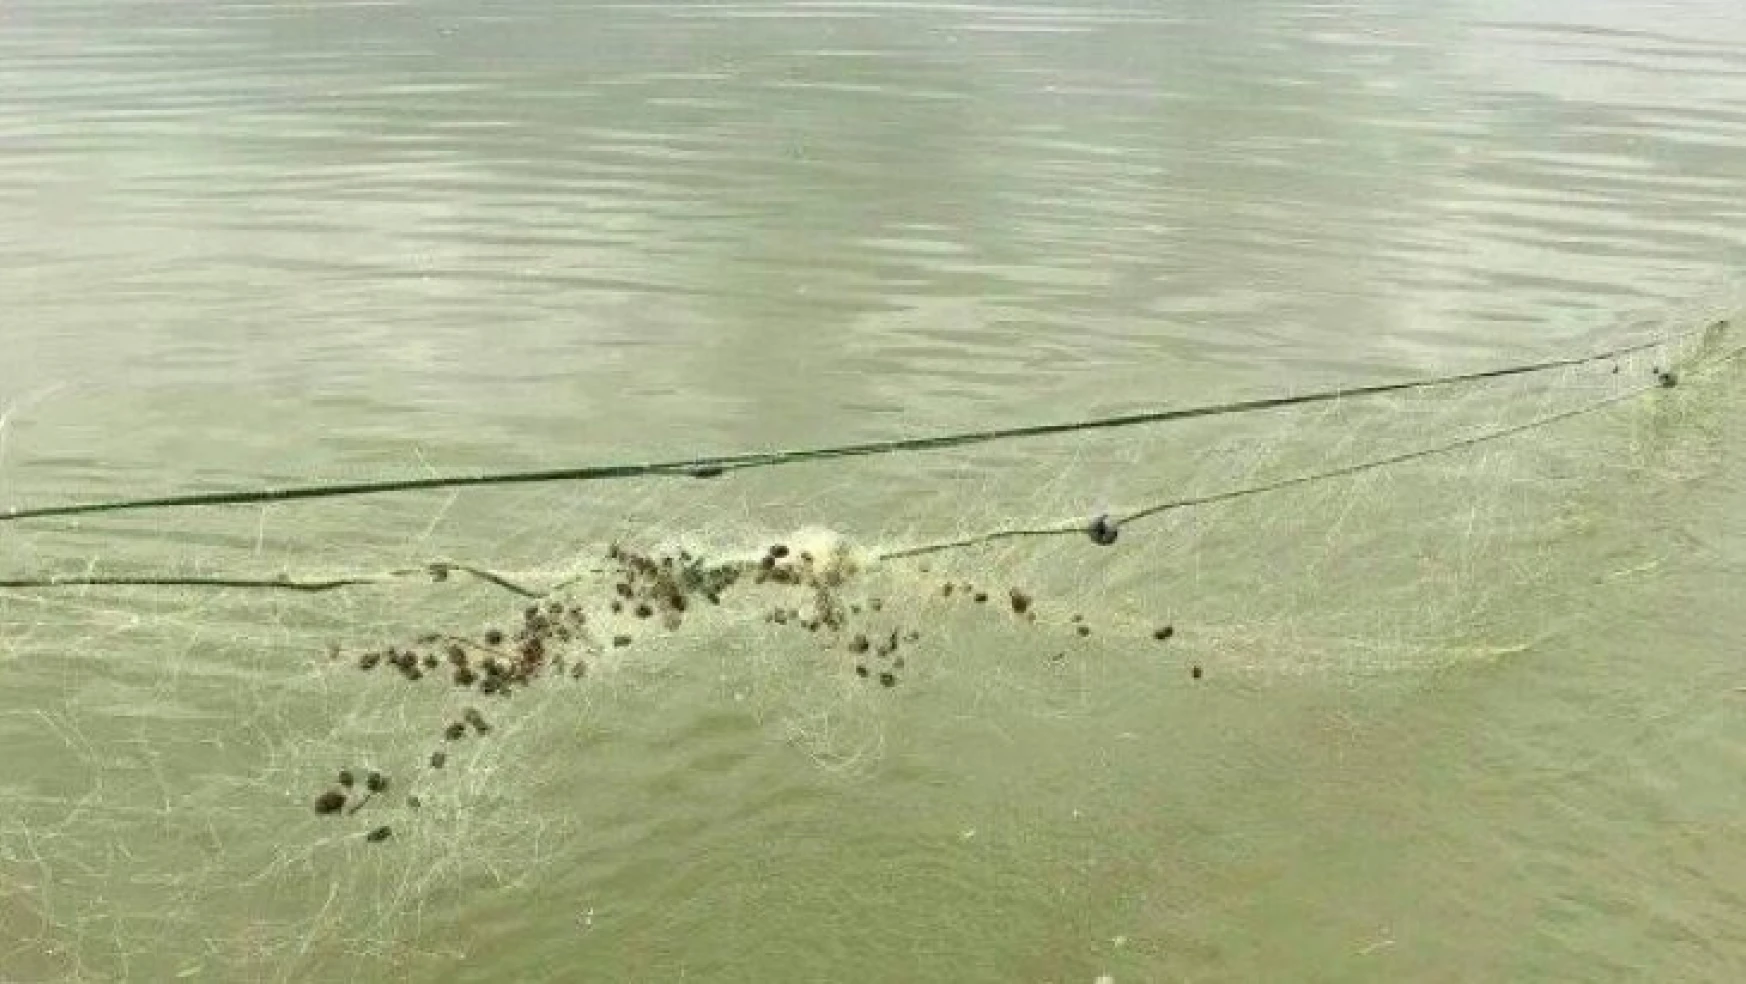 Elazığ'da kaçak balık avı ile mücadele